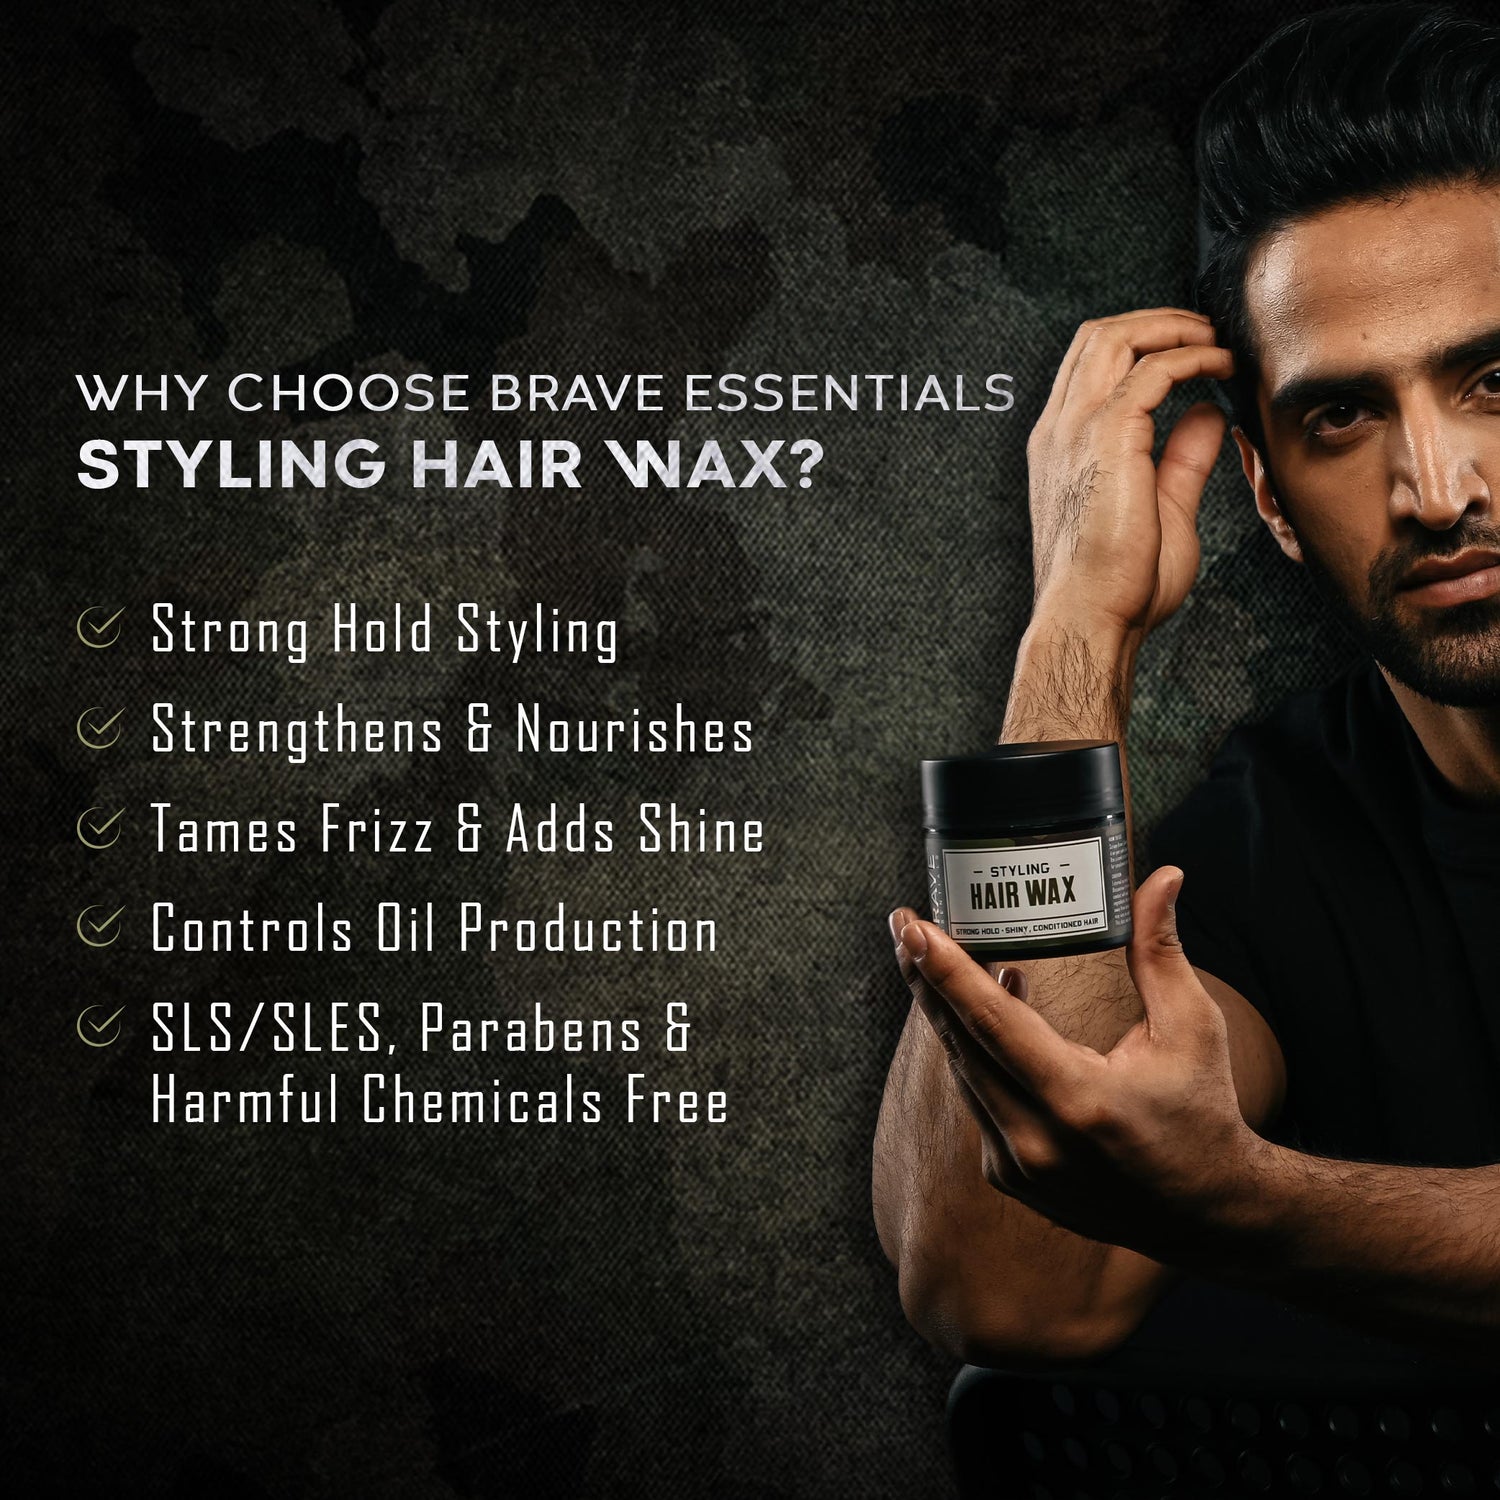 Hair Wax - Buy Men Hair Wax Online for Perfect Hair